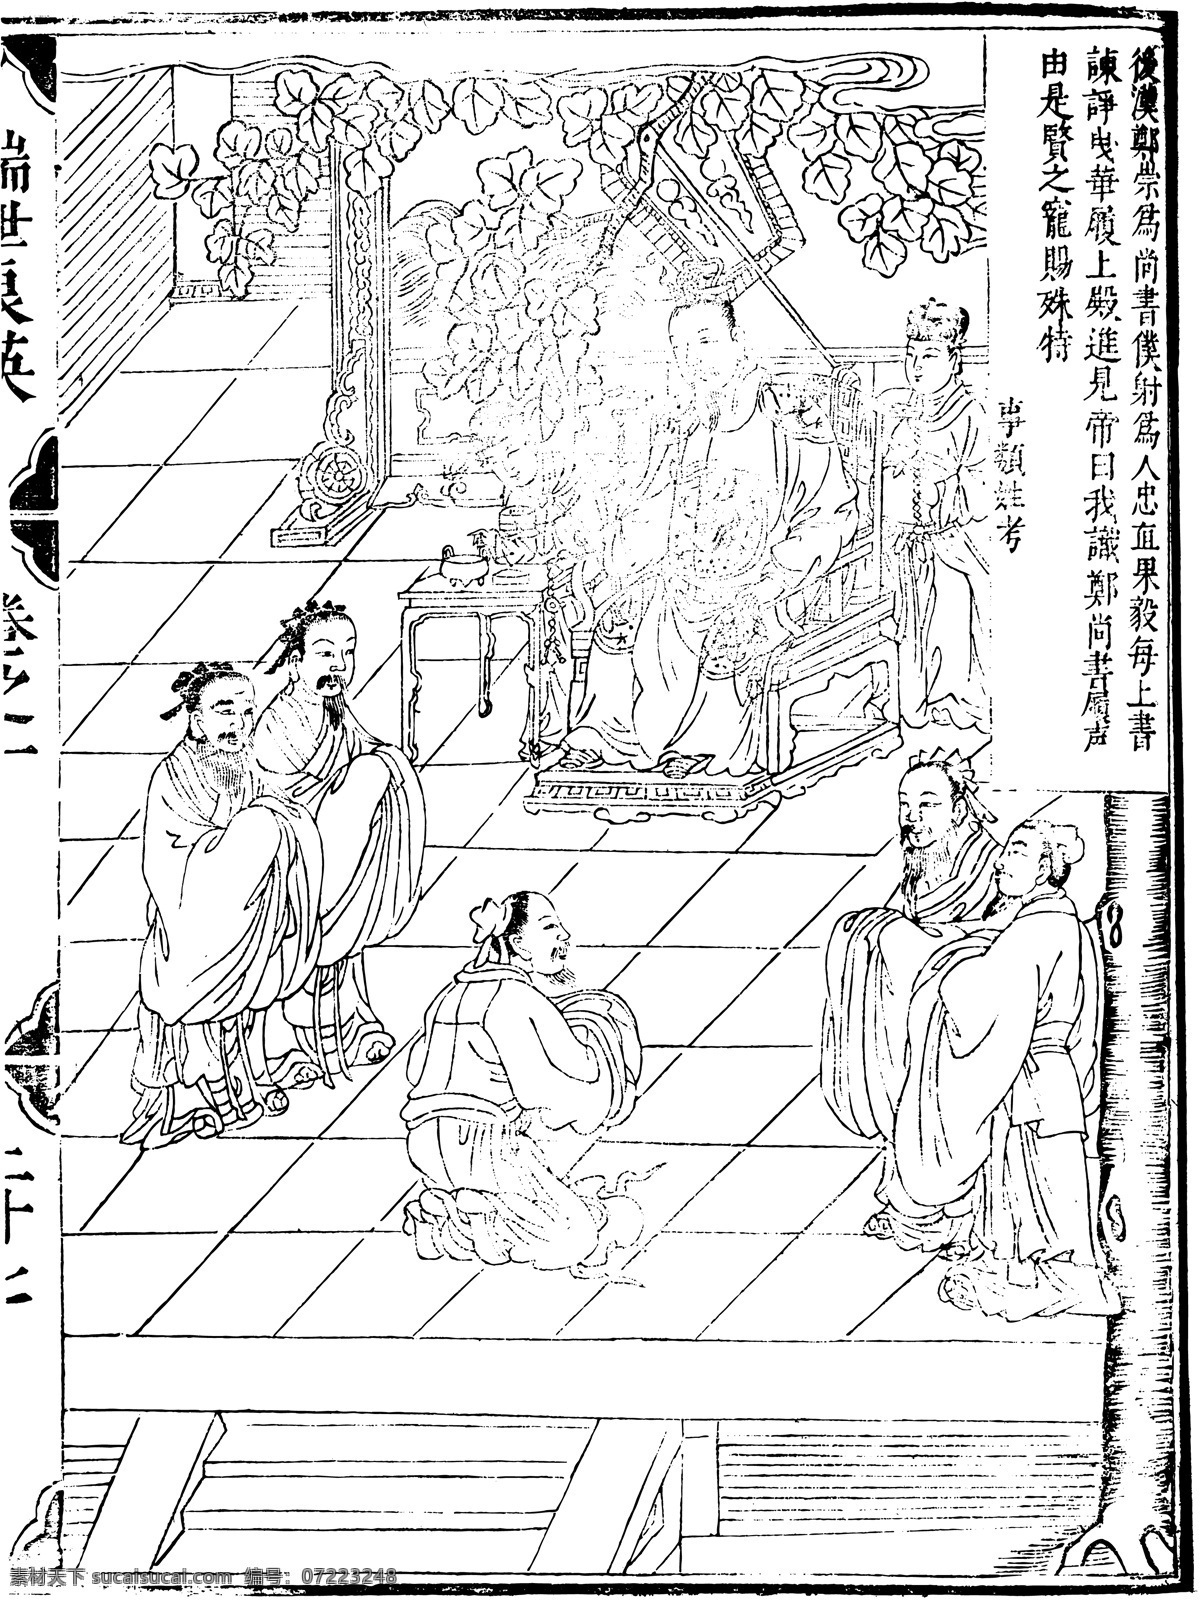 瑞世良英 木刻版画 中国 传统文化 51 中国传统文化 设计素材 版画世界 书画美术 白色